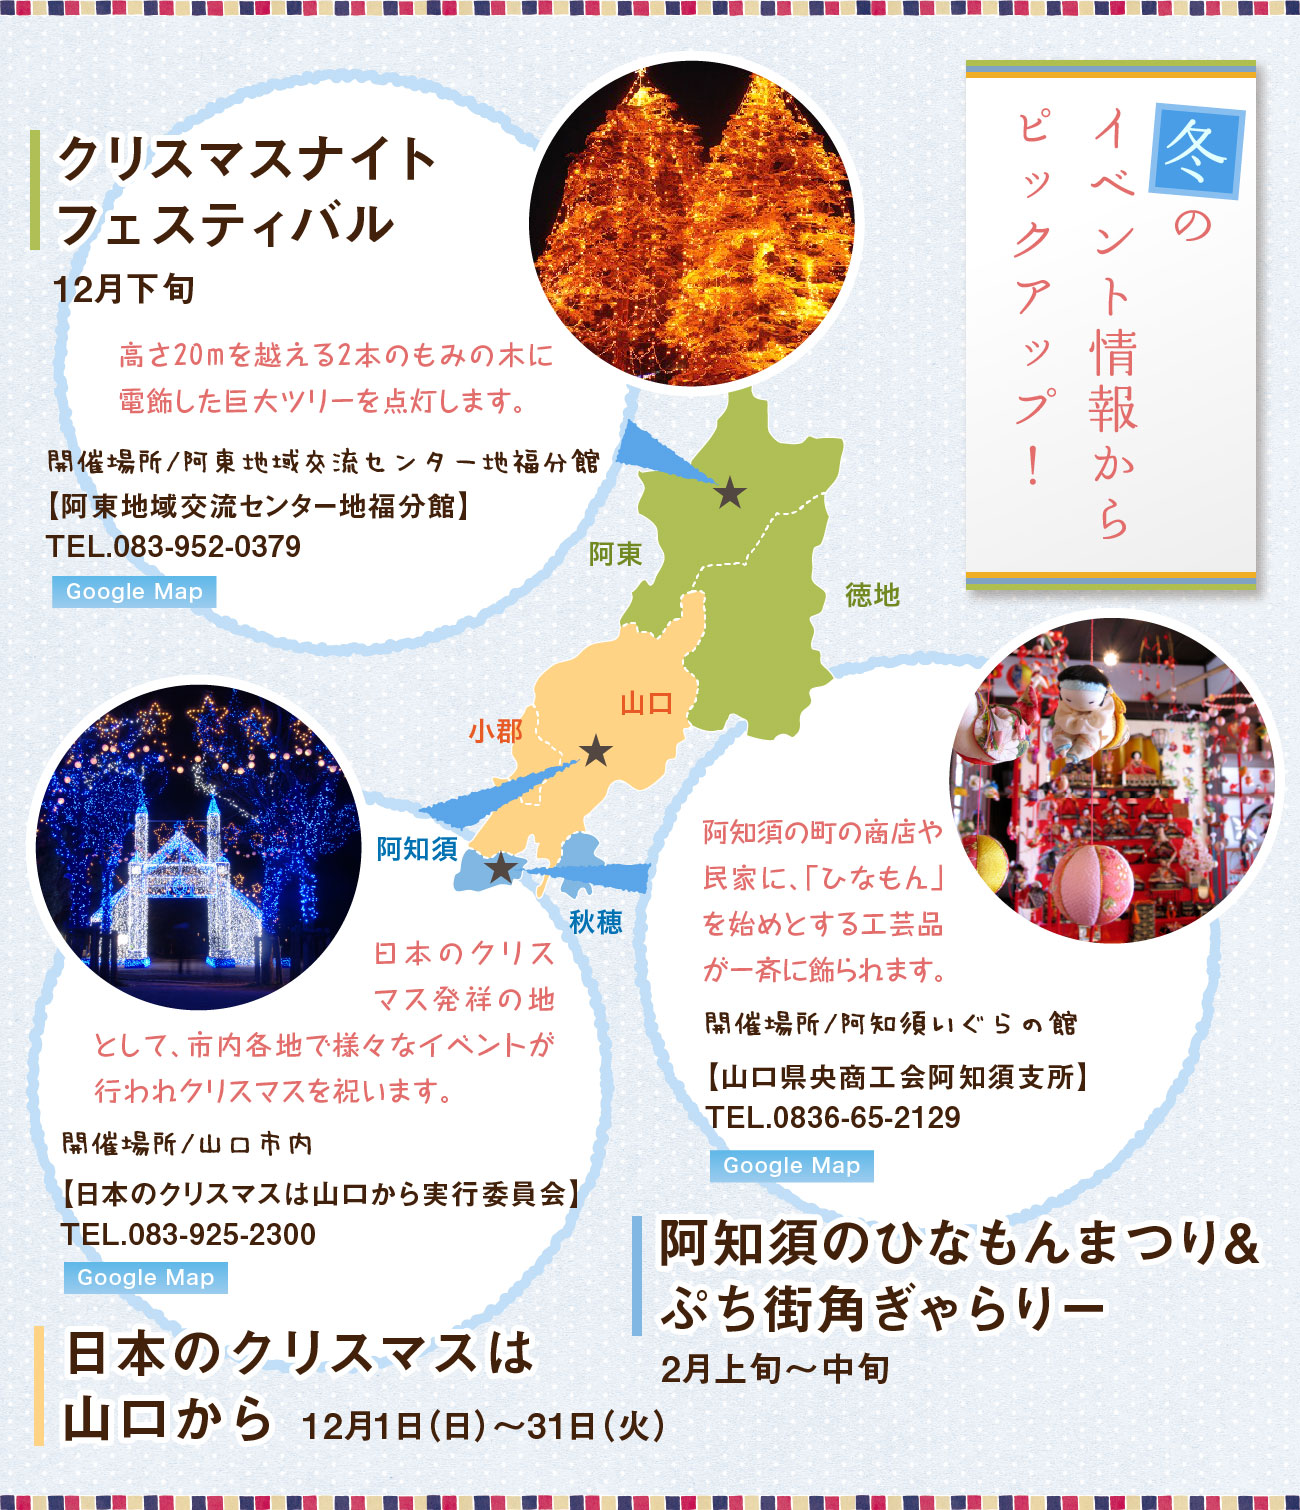 冬のイベント情報からピックアップ！、クリスマスナイトフェスティバル中止、日本のクリスマスは山口から、阿知須ひなもんまつり&街角ぎゃらりー